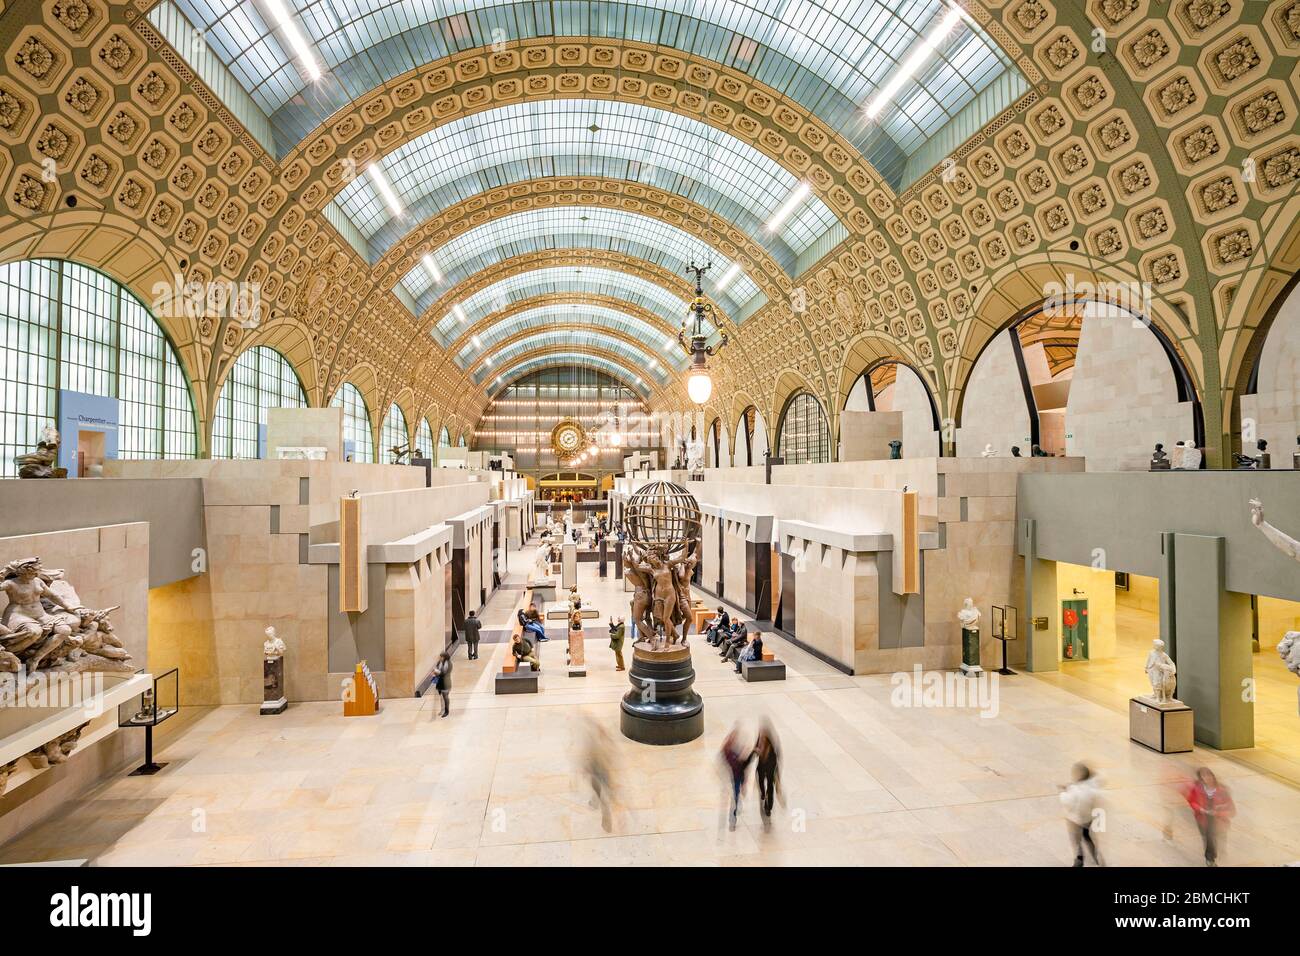 Interior del Musée d'Orsay en París Francia. El edificio es la antigua Gare d'Orsay, una estación de tren de Beaux-Arts construida entre 1898 y 1900. Foto de stock